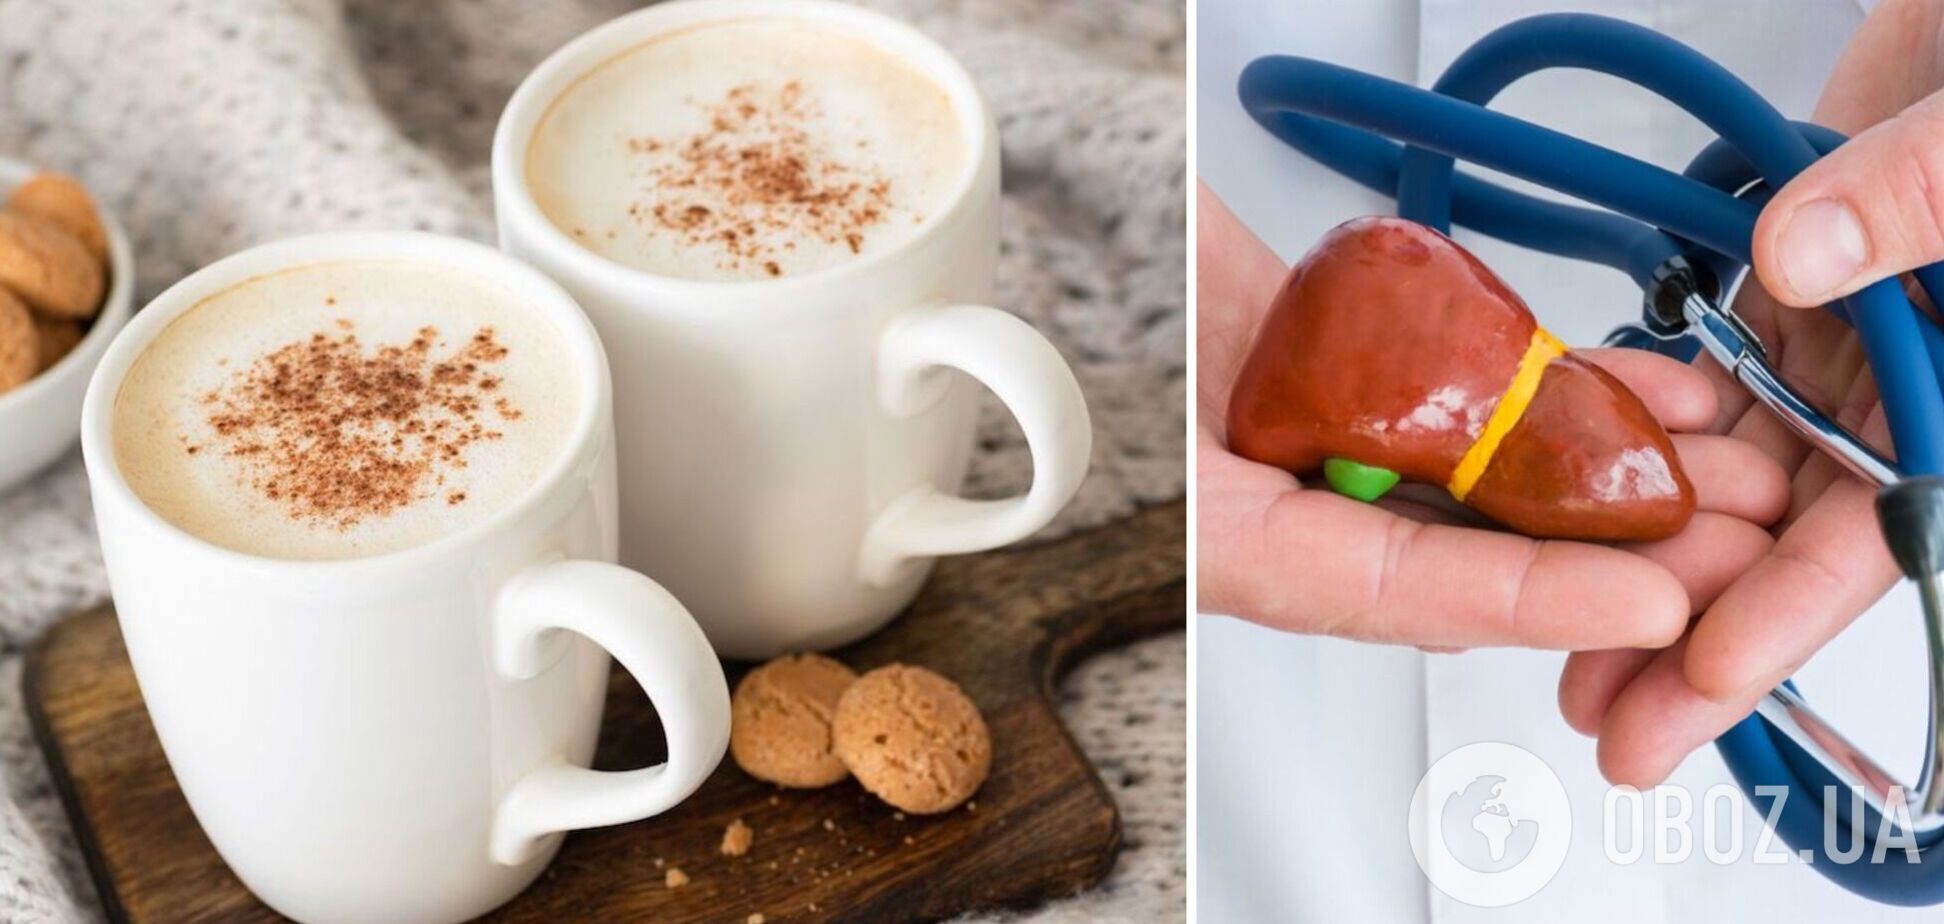 Употребление кофе может снизить риск развития опасного вида рака: результаты исследования